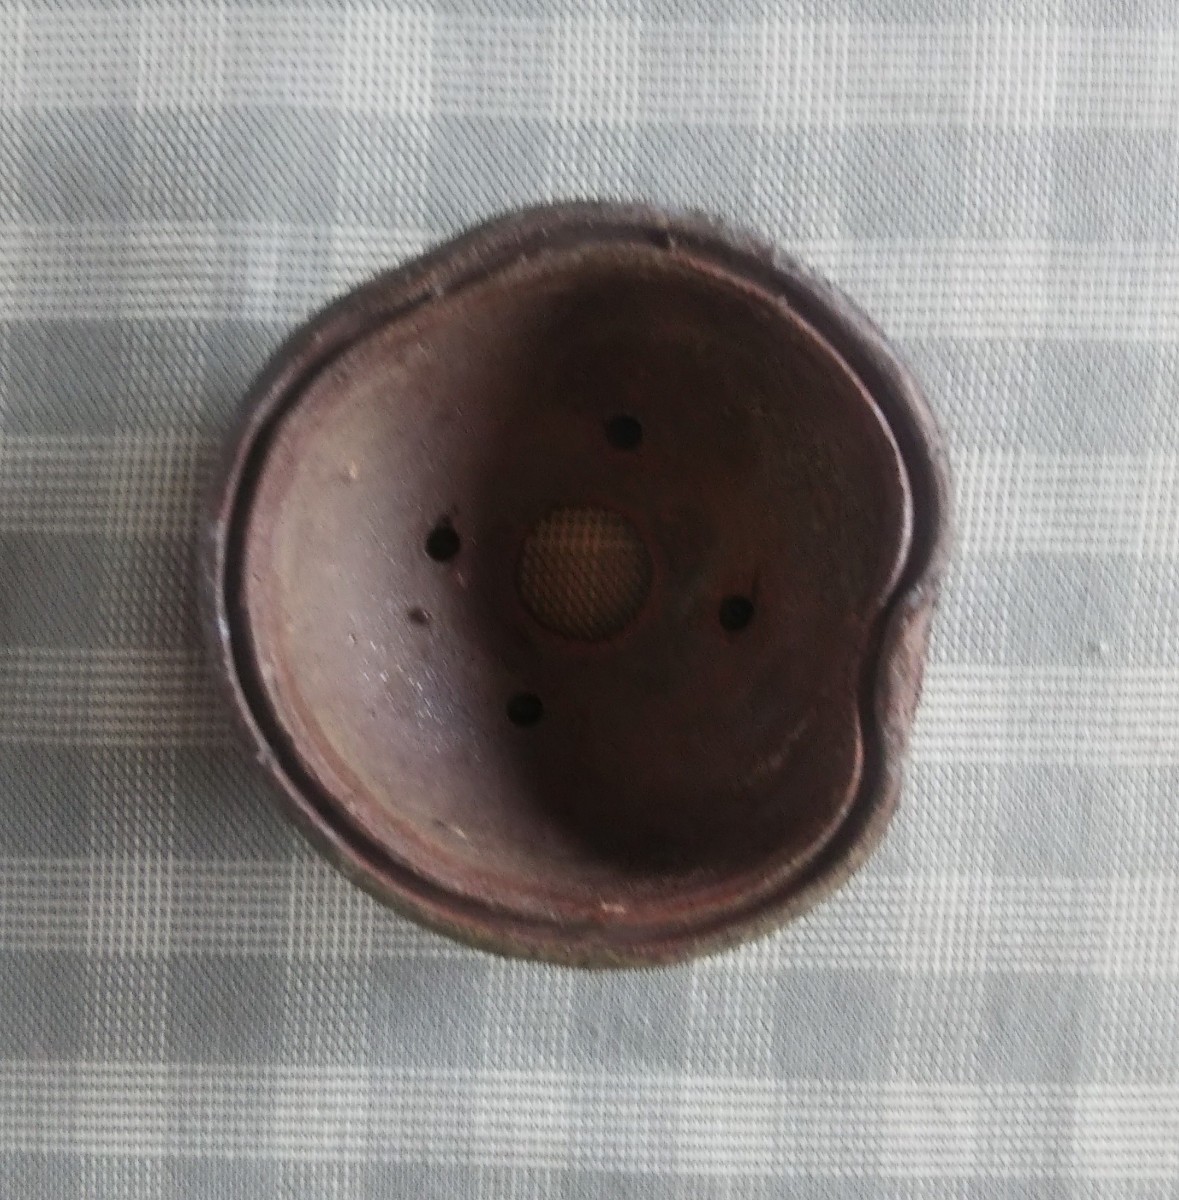 [水車]。備前焼の土使用、光落款の変形丸鉢です。No.687。日本鉢。_画像8